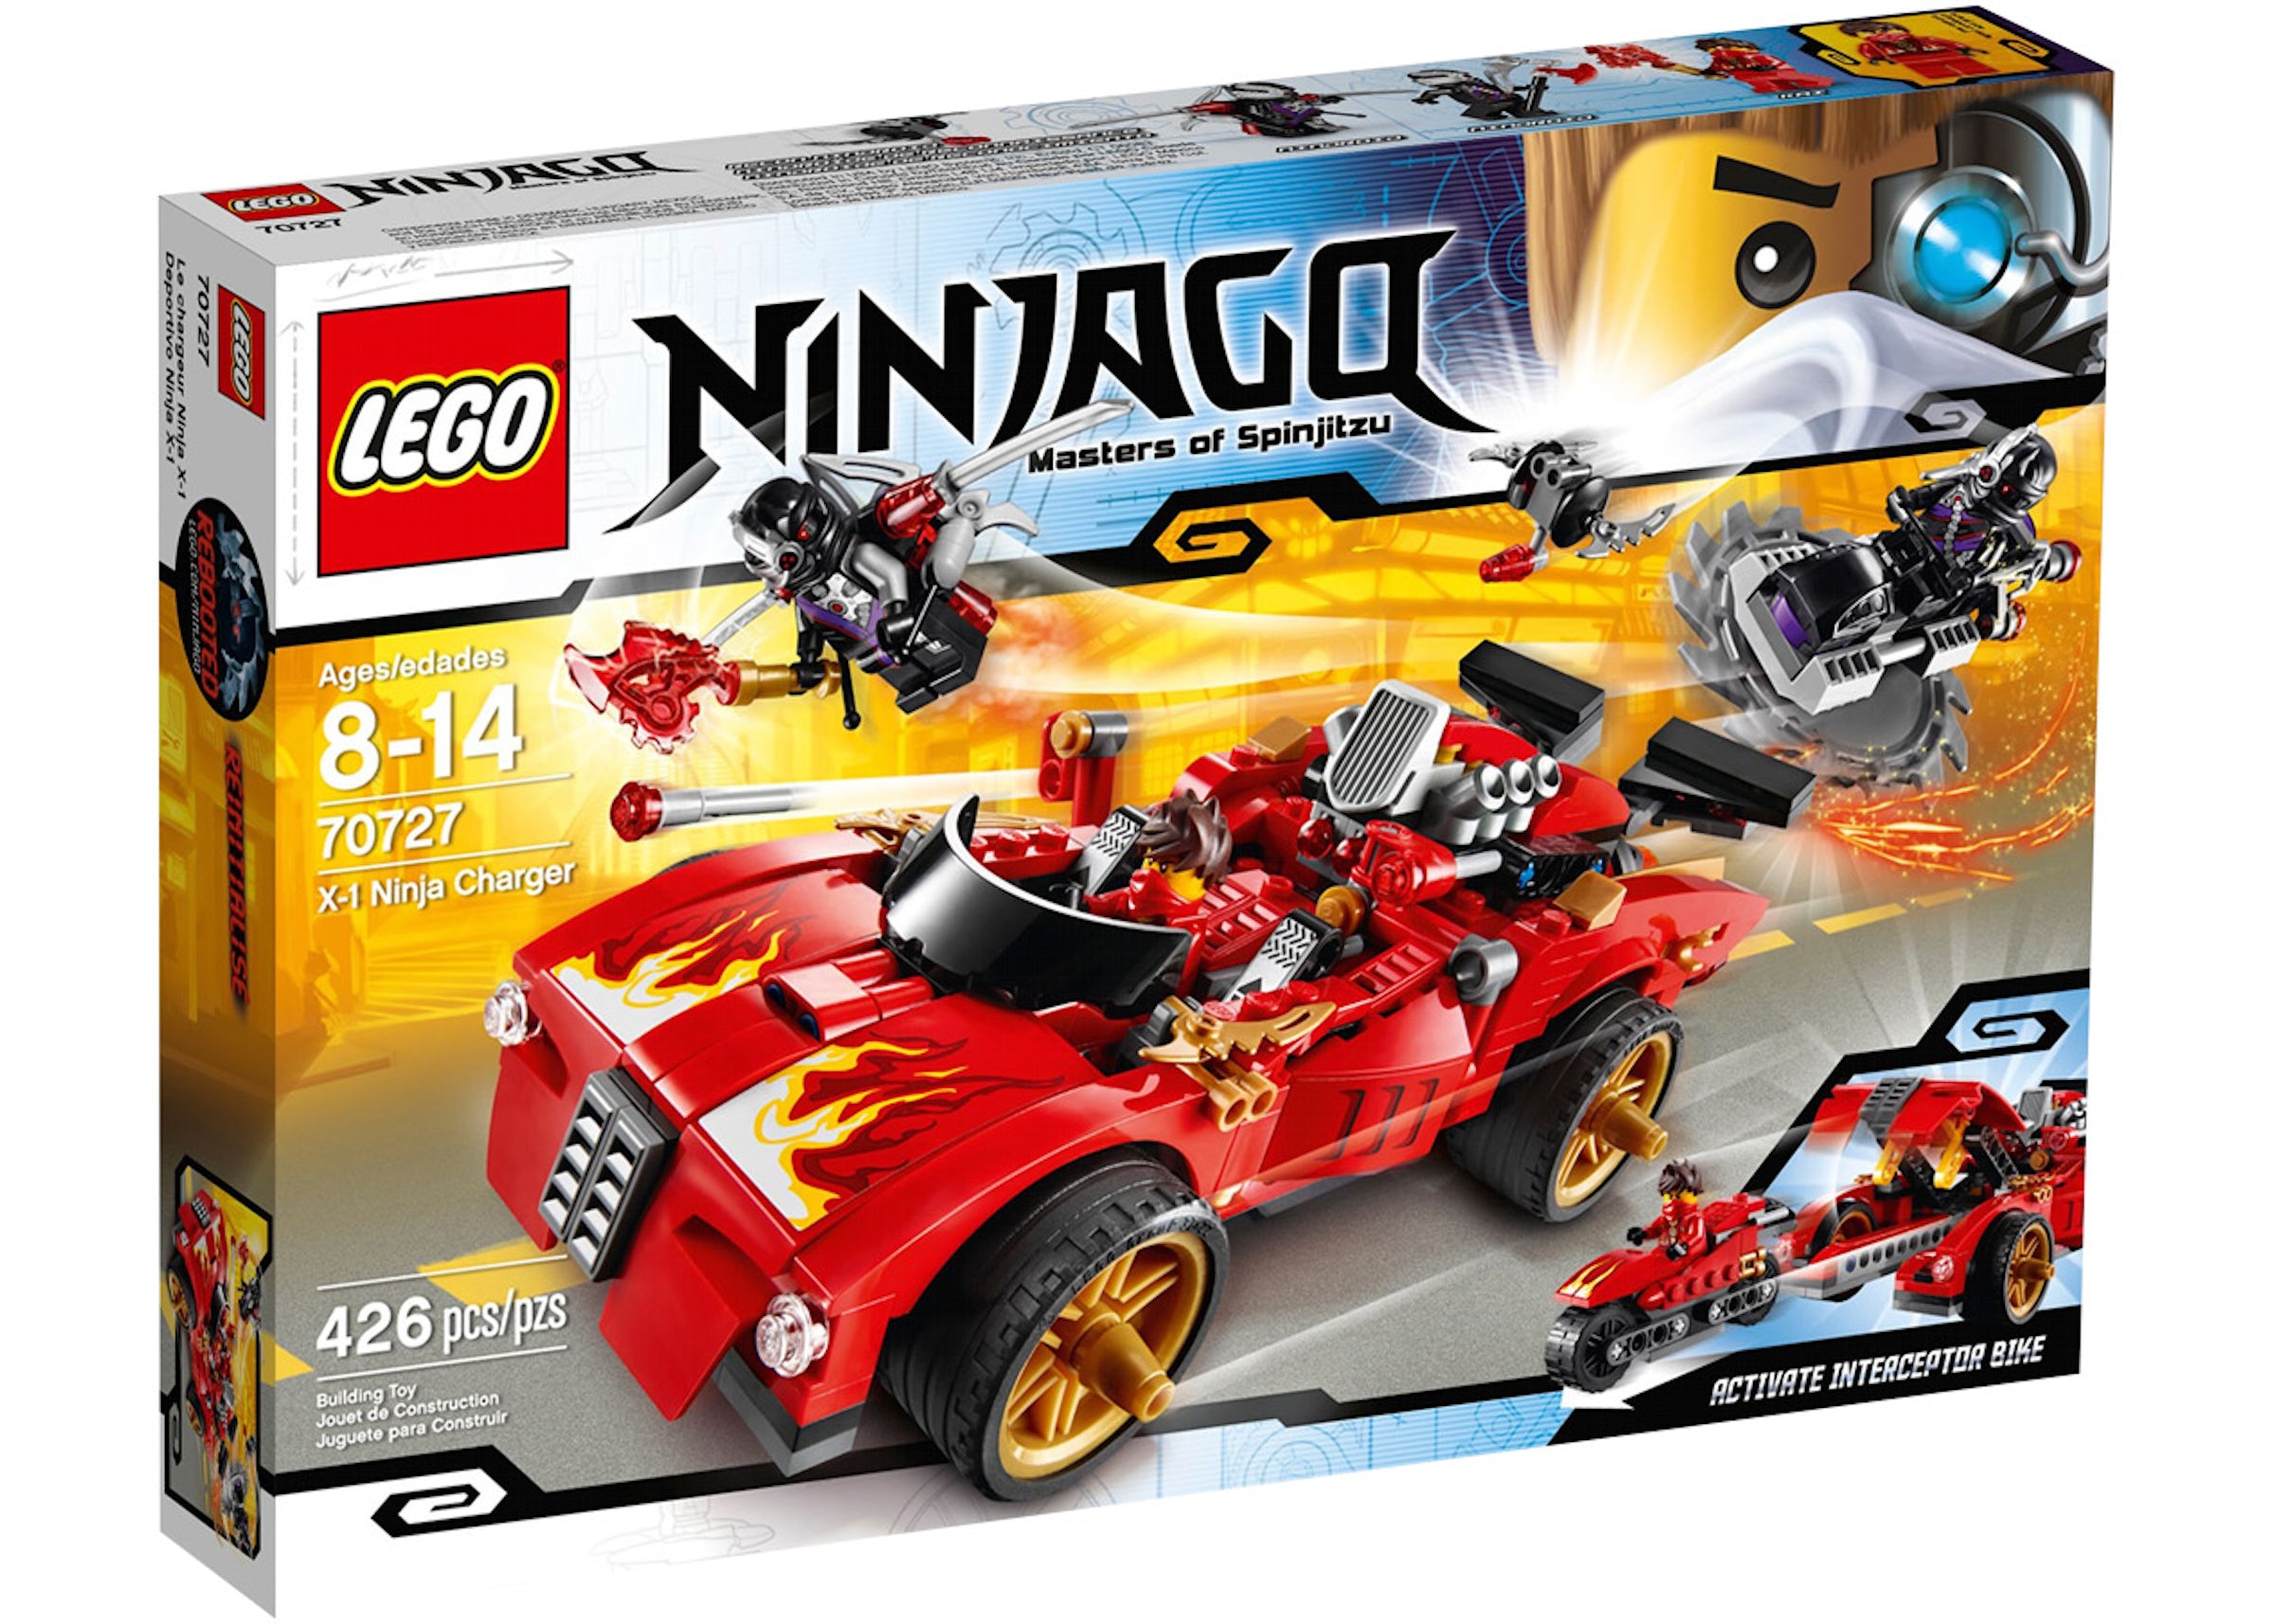 LEGO Ninjago X-1 Ninja Charger Set 70727 - US